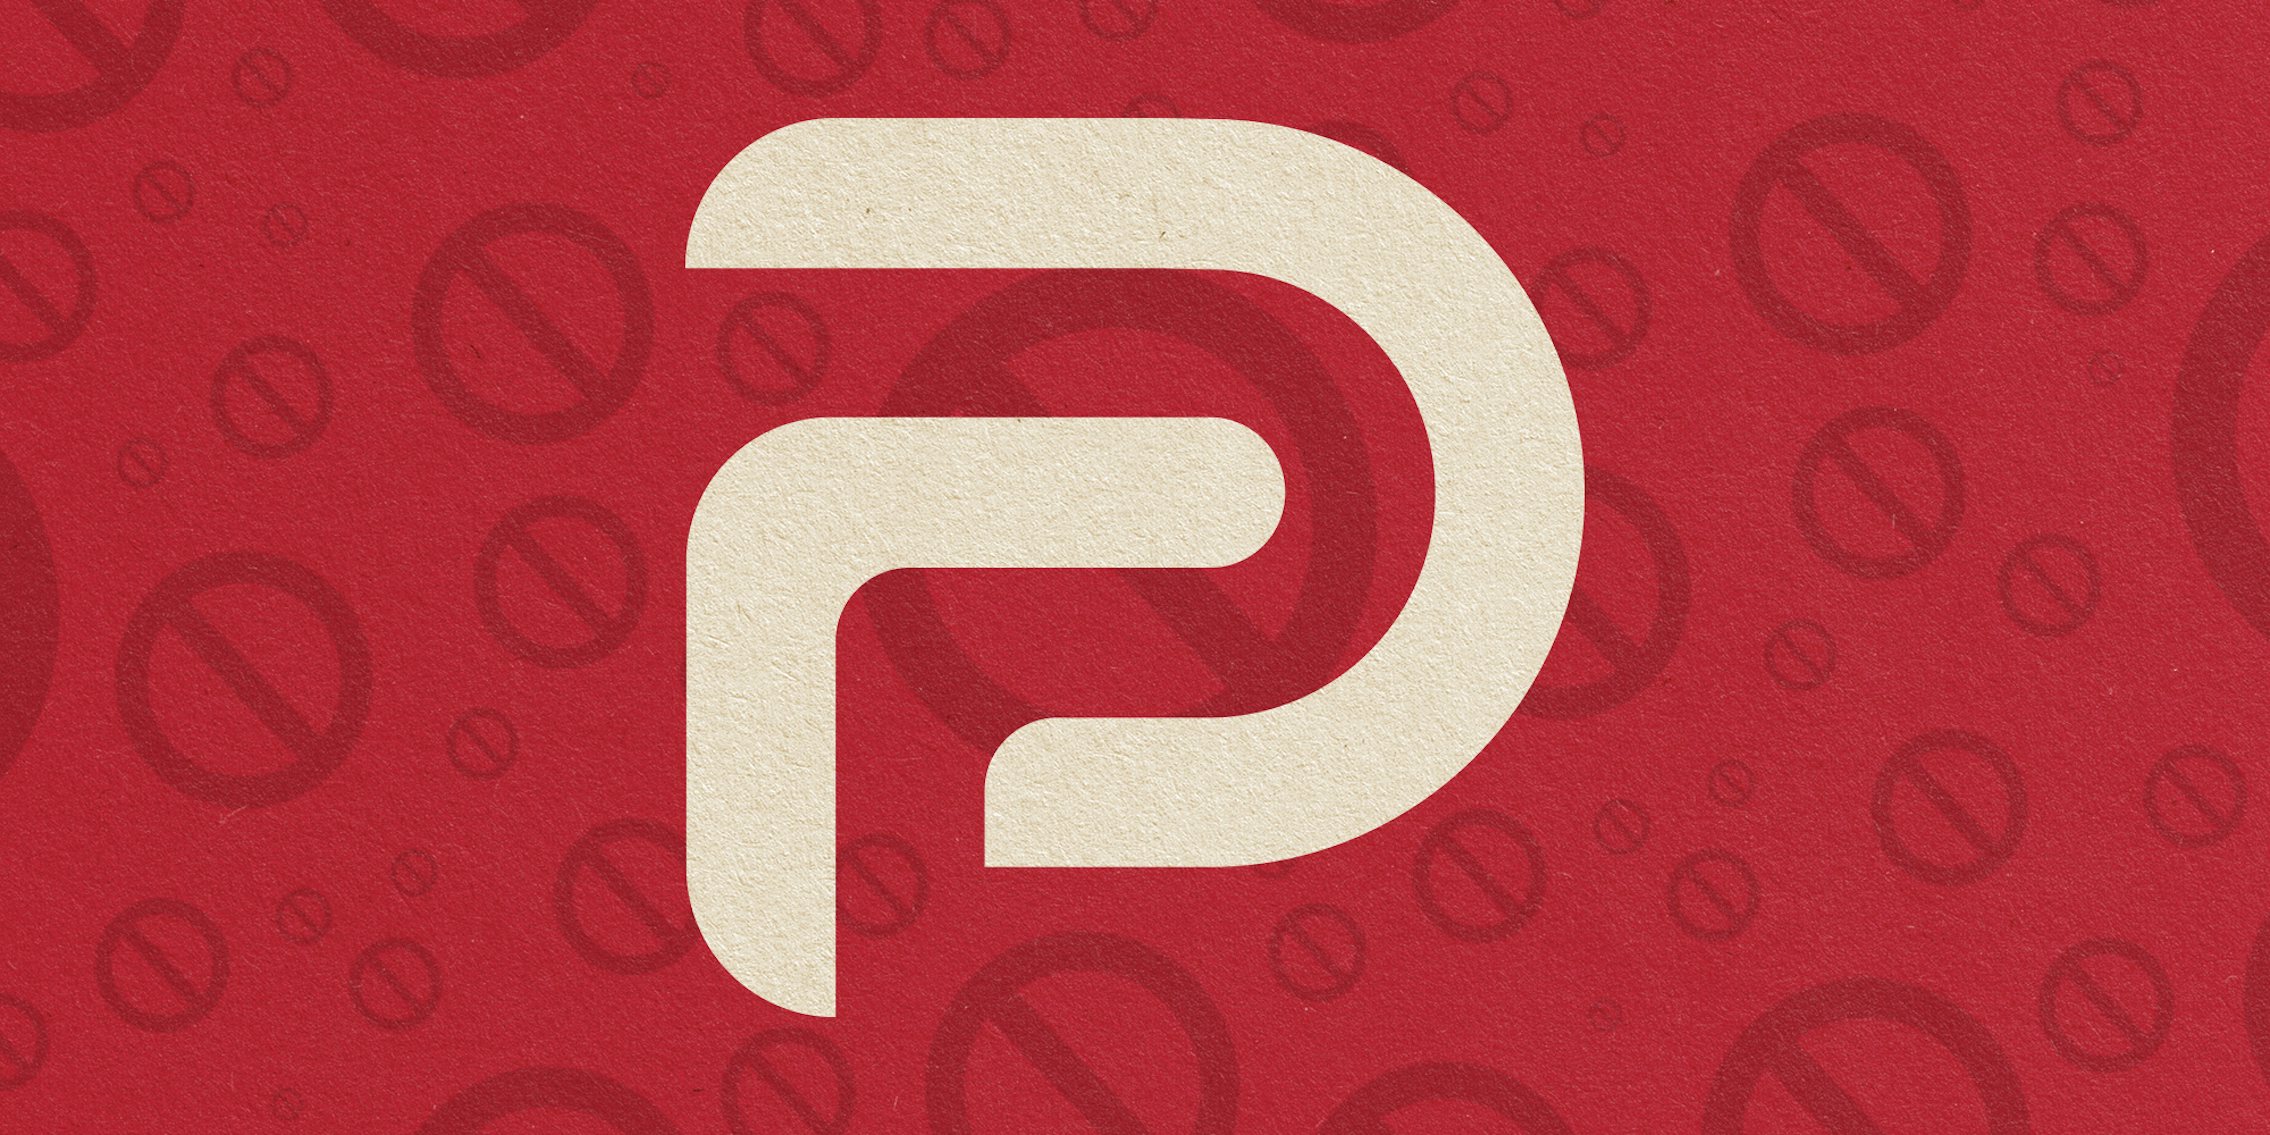 Parler logo over 'no' symbol background